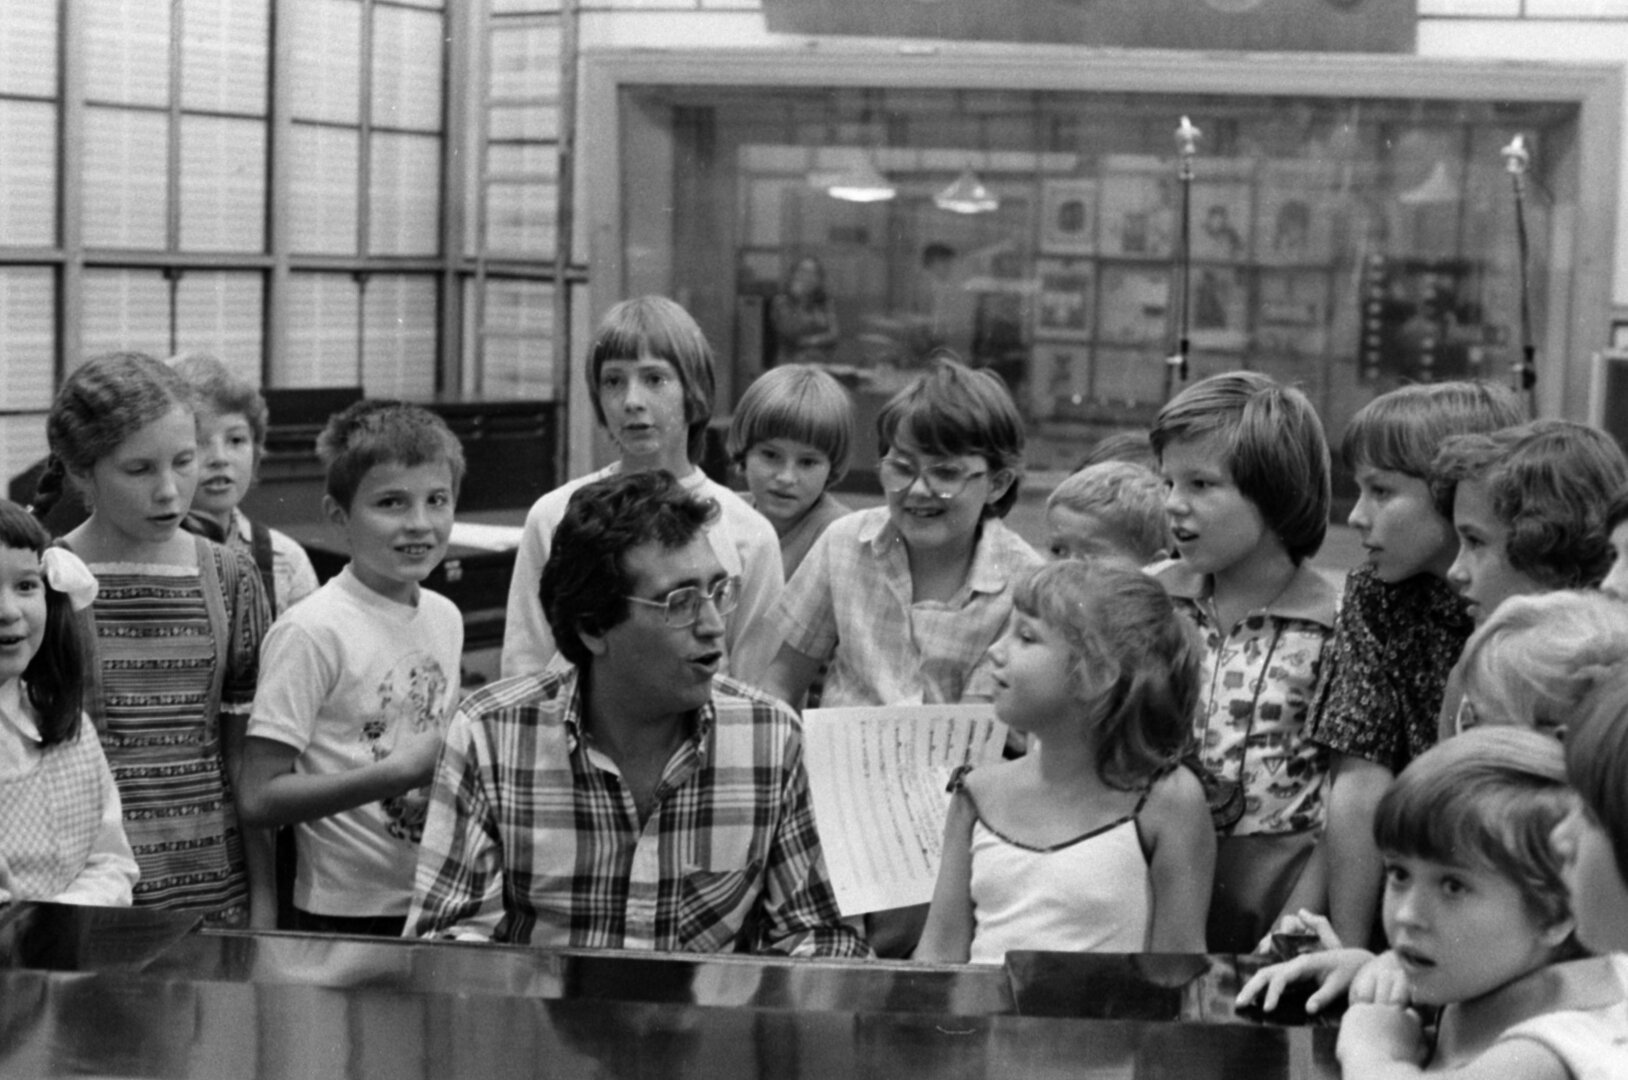 1980-ban a Magyar Rádió stúdiója, Máté Péter, és az őt kísérő gyerekek kórusa, új dalának felvételén. - forrás: Fortepan / Szalay Zoltán